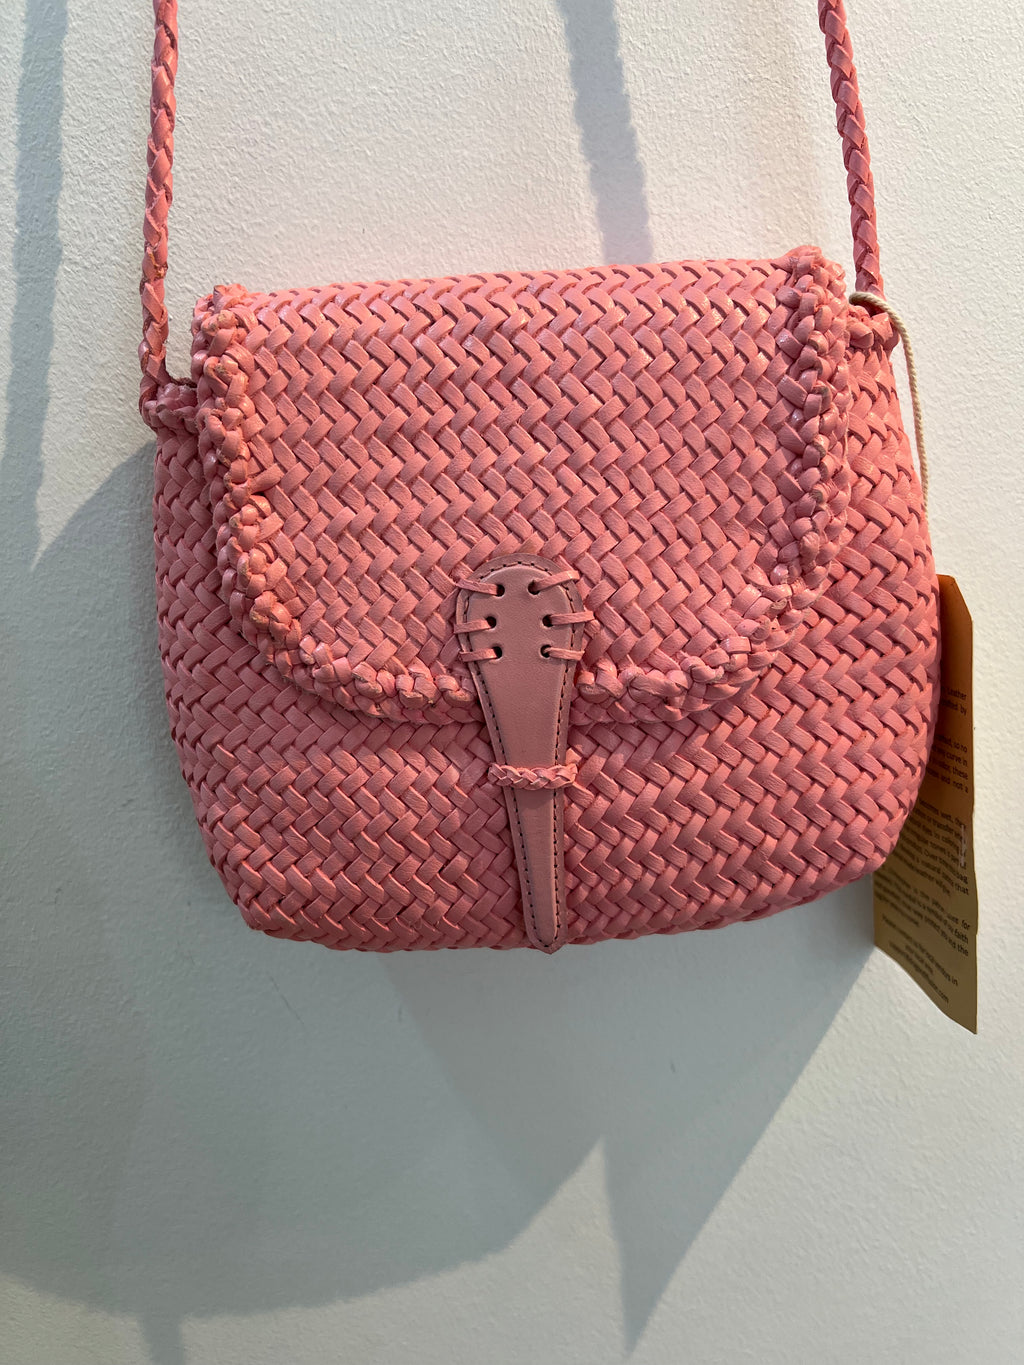 Hetre Alresford Hampshire Accessory Store Dragon Diffusion Pastel Pink Mini City Cross Body Bag